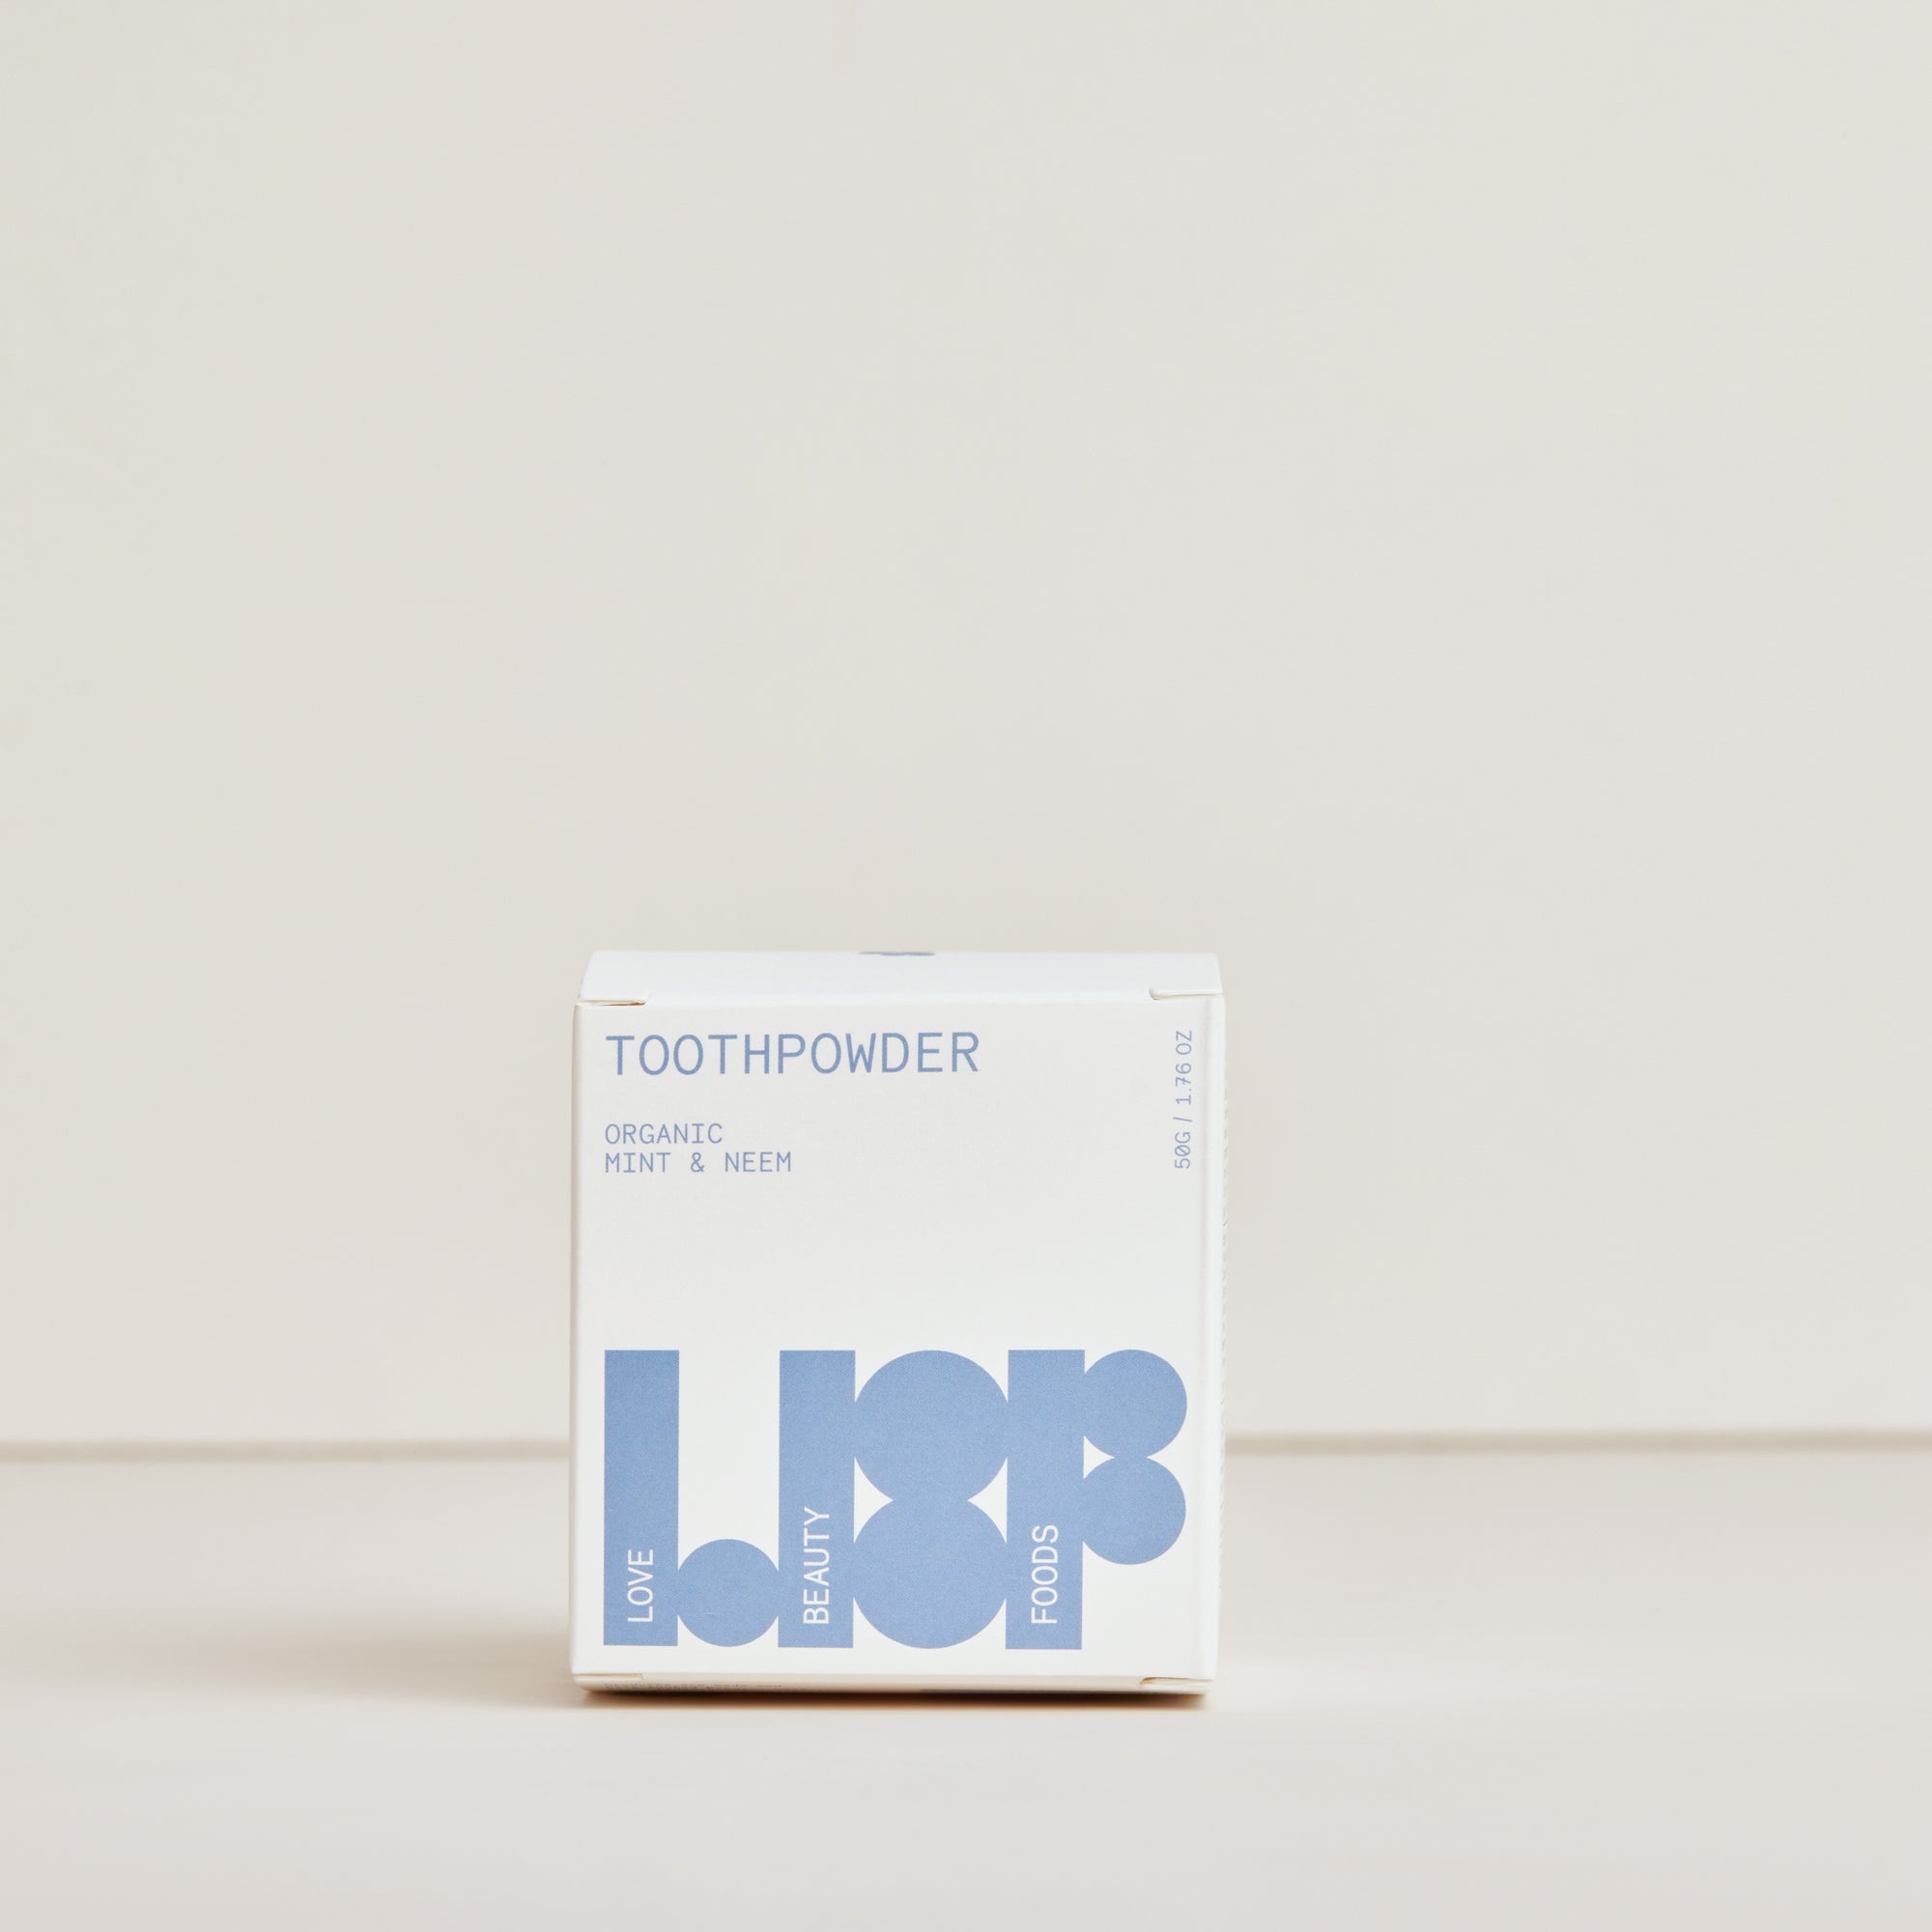 Toothpowder - Organic Mint & Neem